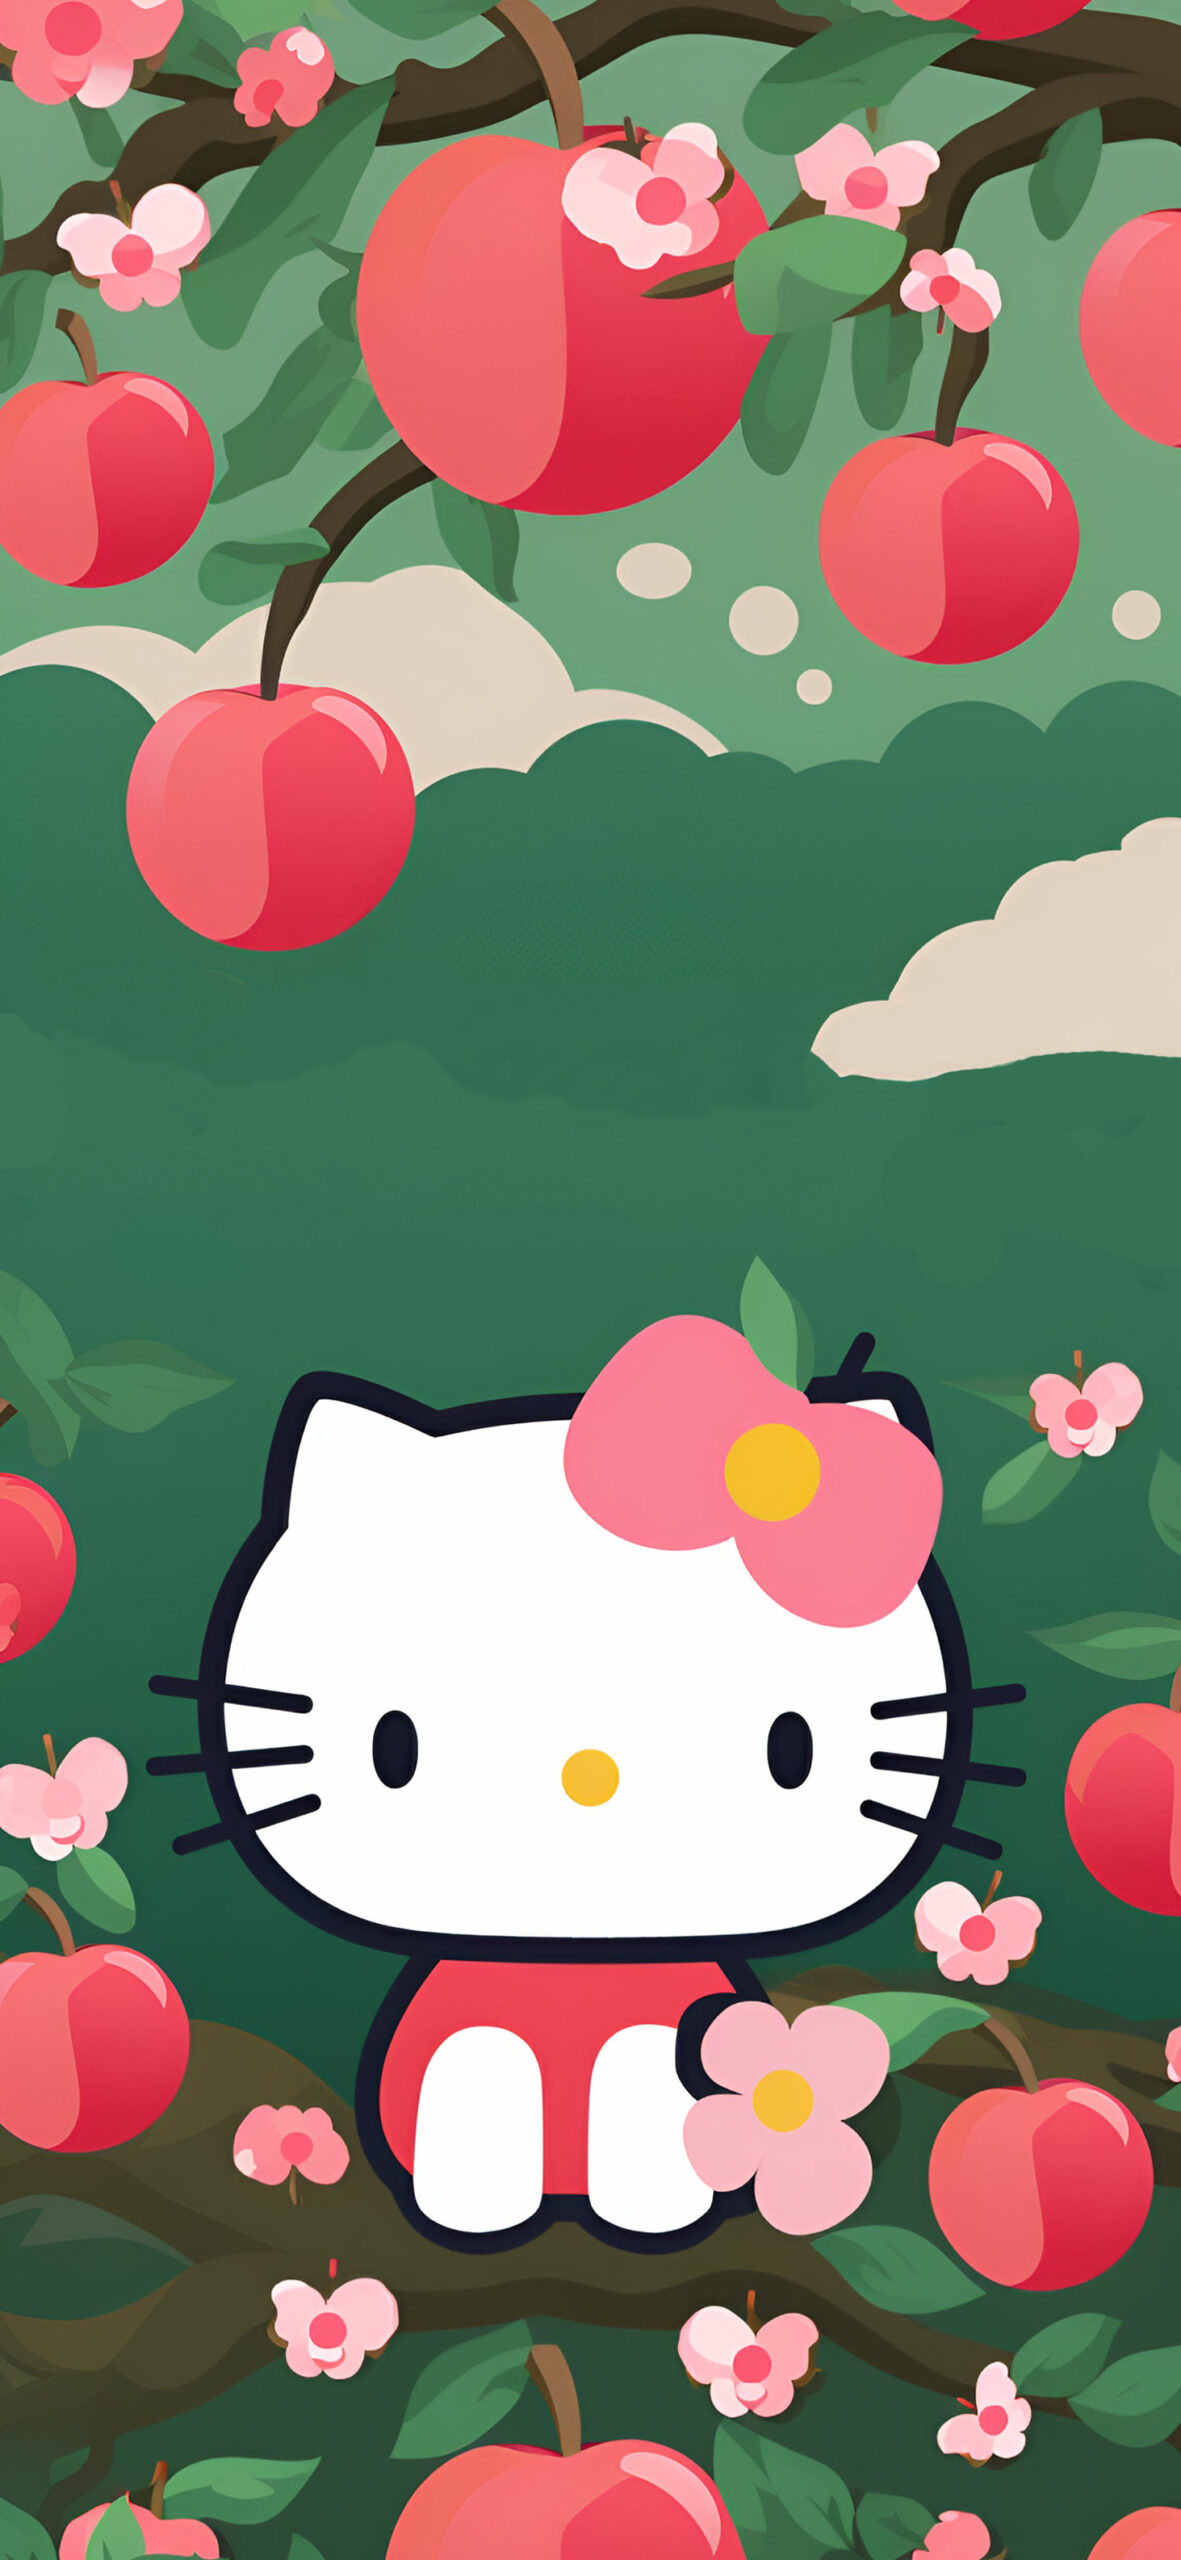 Sanrio Hello Kitty on Apple Tree Wallpaper Hello Kitty Wallpap